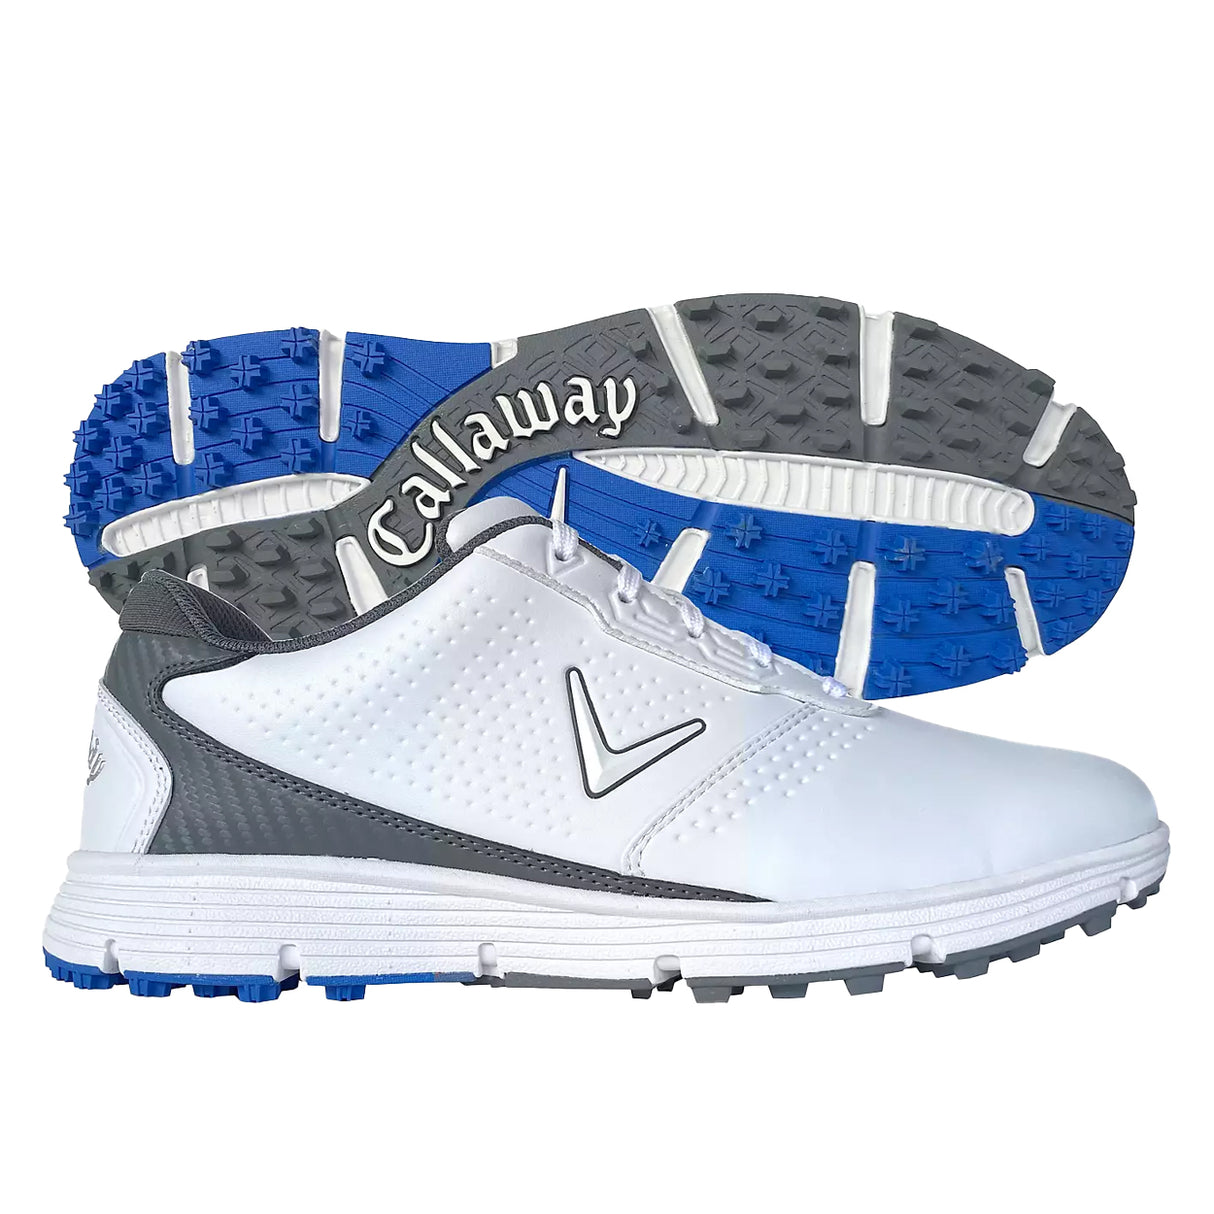 Callaway Men's Balboa Sport Spikeless Waterproof Golf Shoe